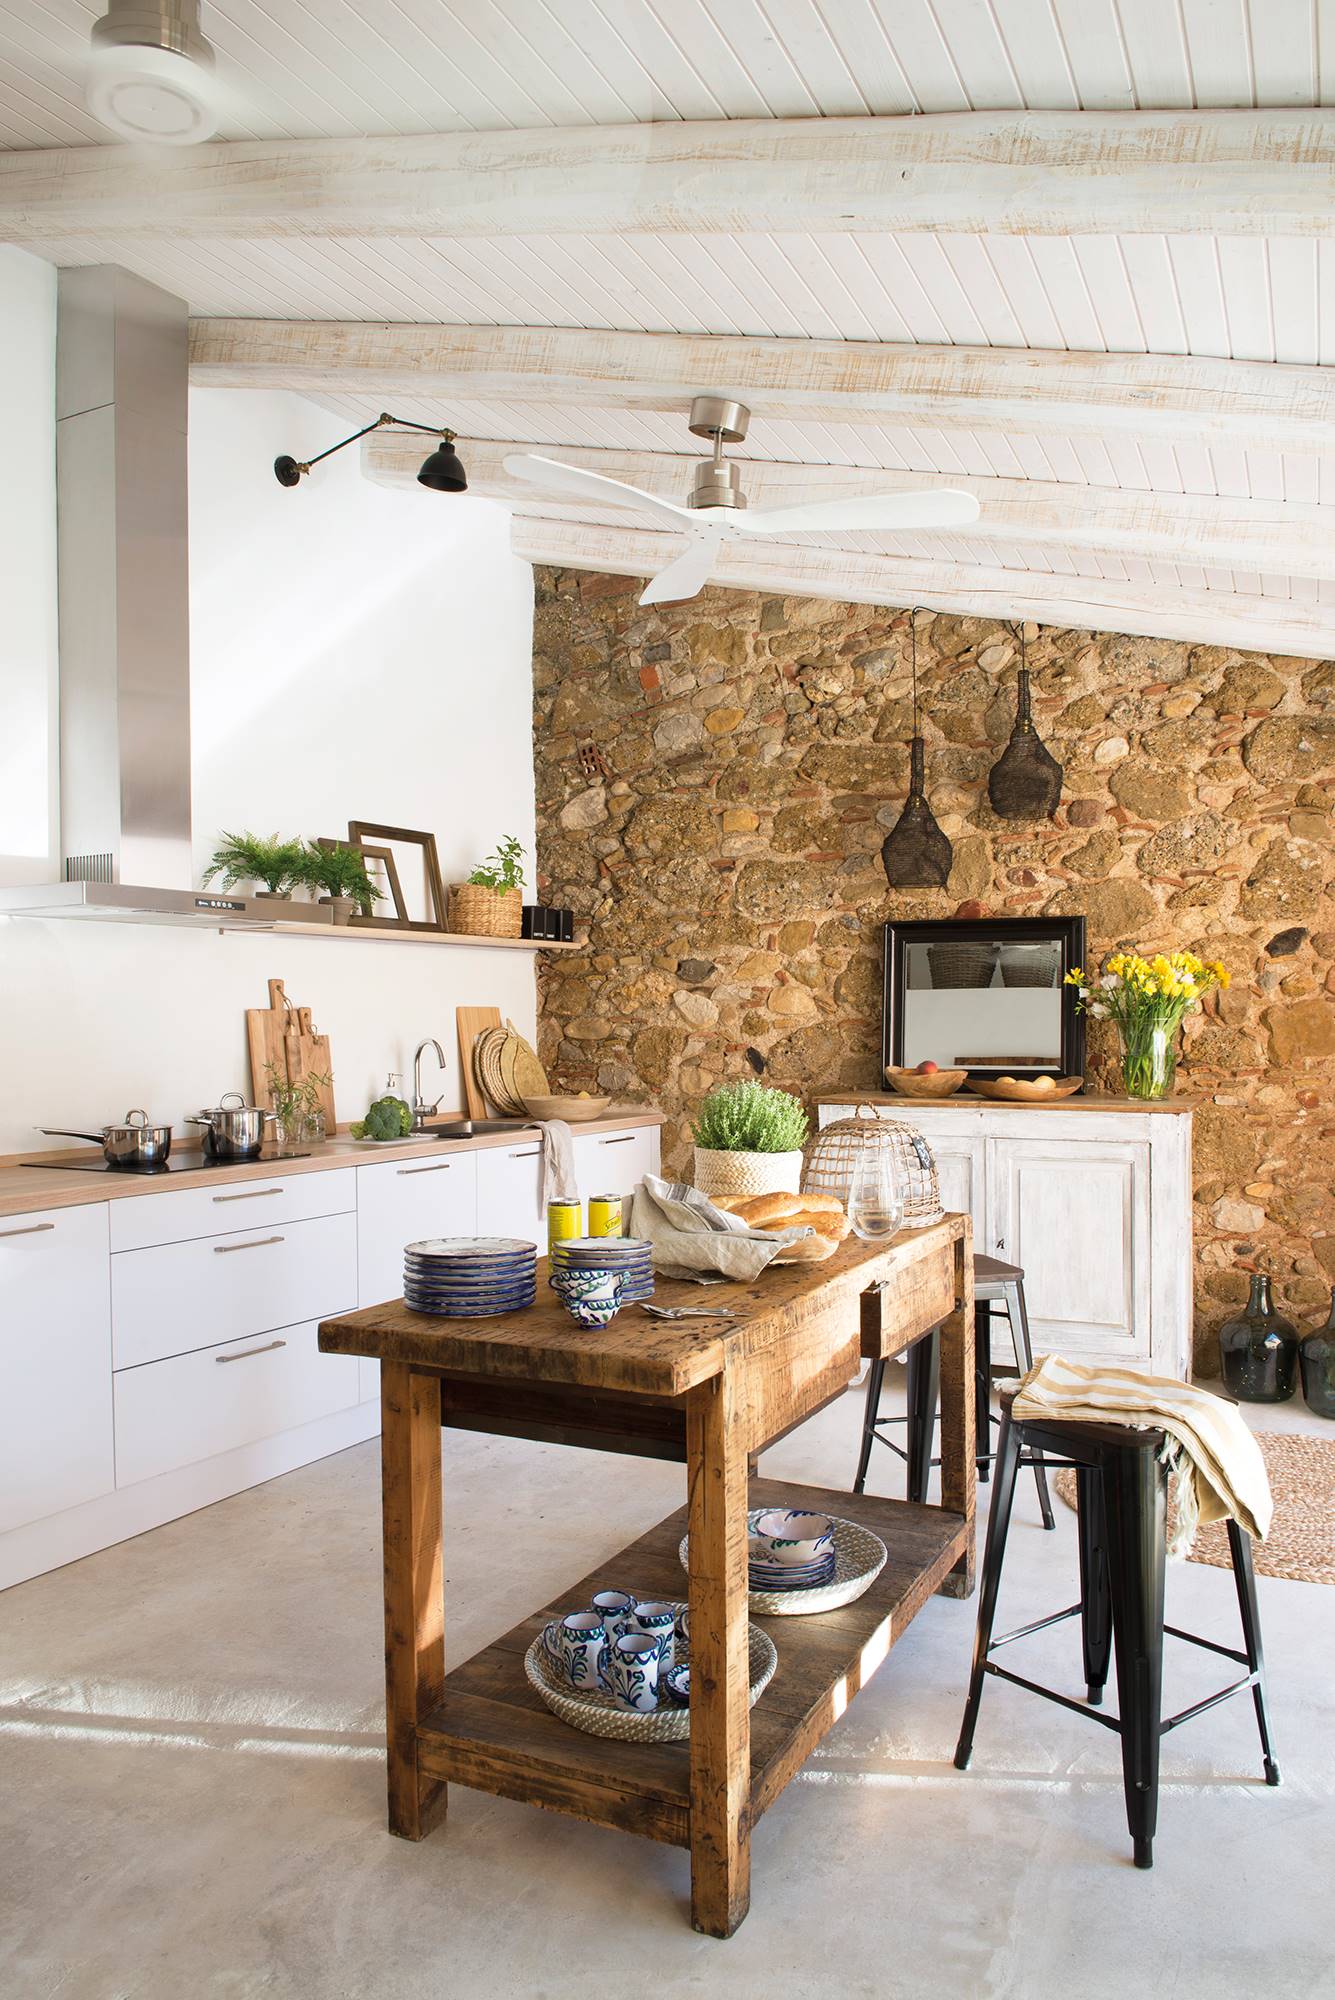 Cocina de estilo rústico con pared de piedra y mesa tocinera. 